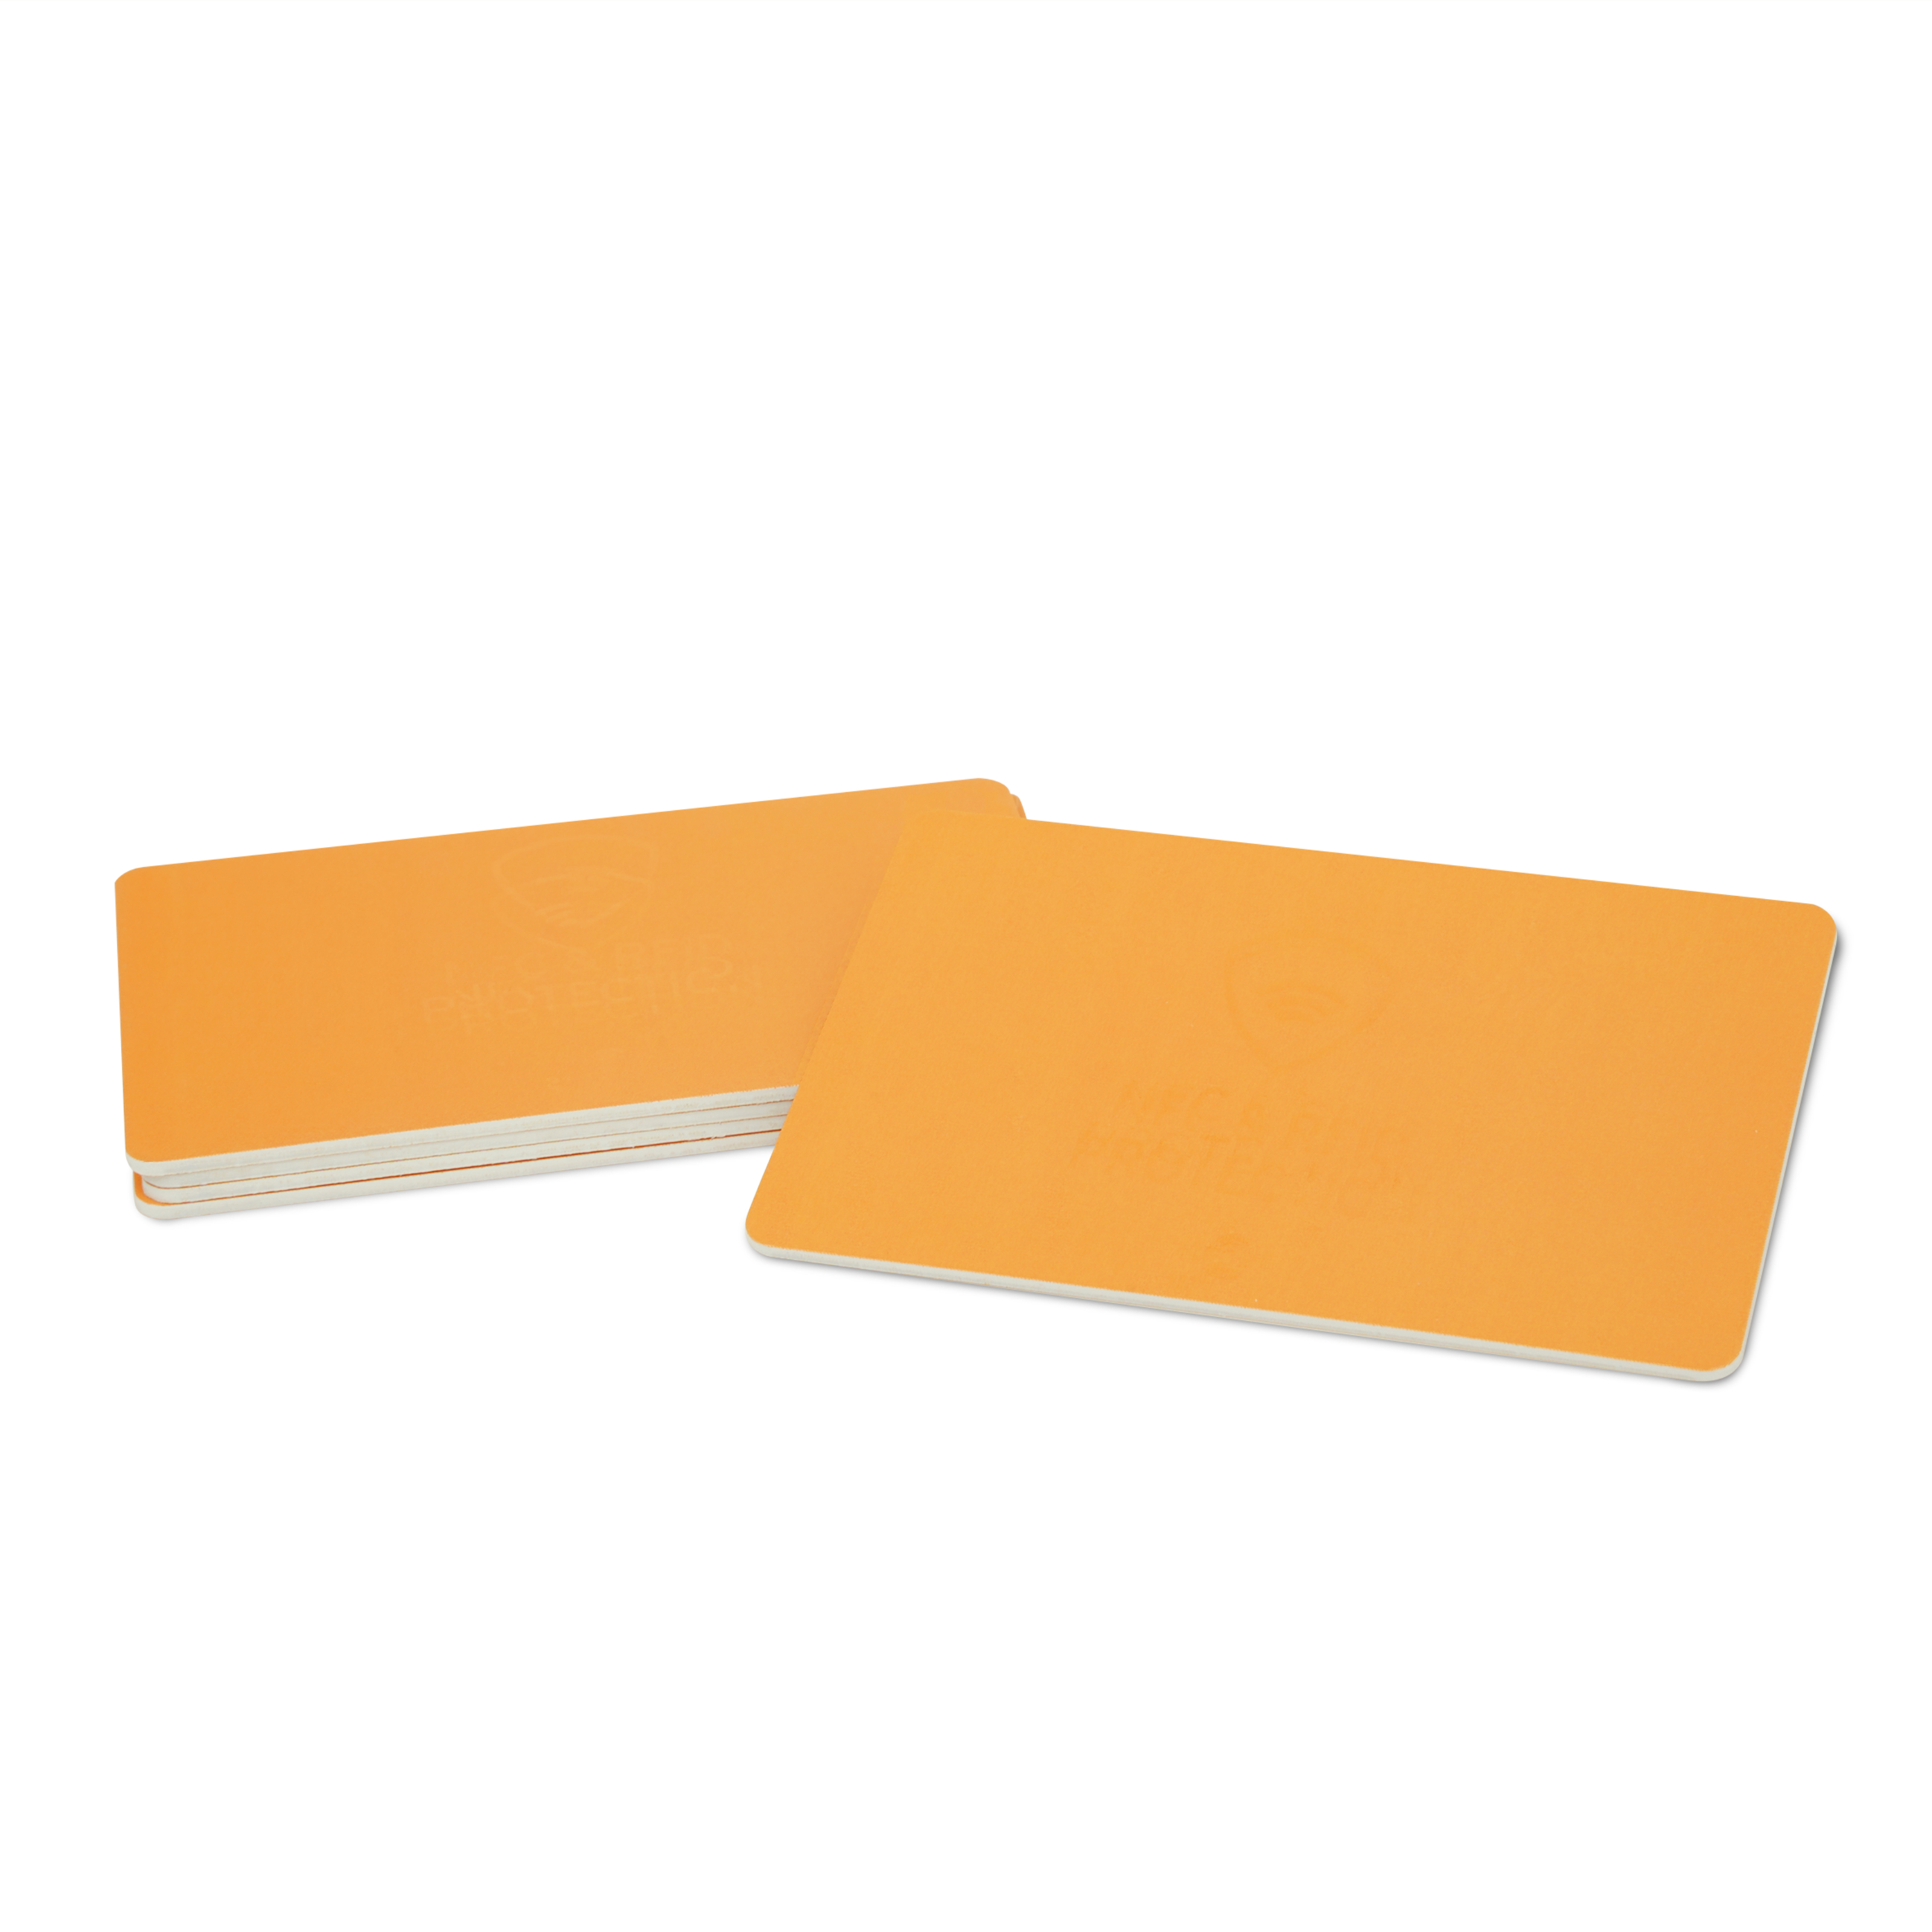 Gruppenbild NFC Schutzkarte in orange im ISO-Format